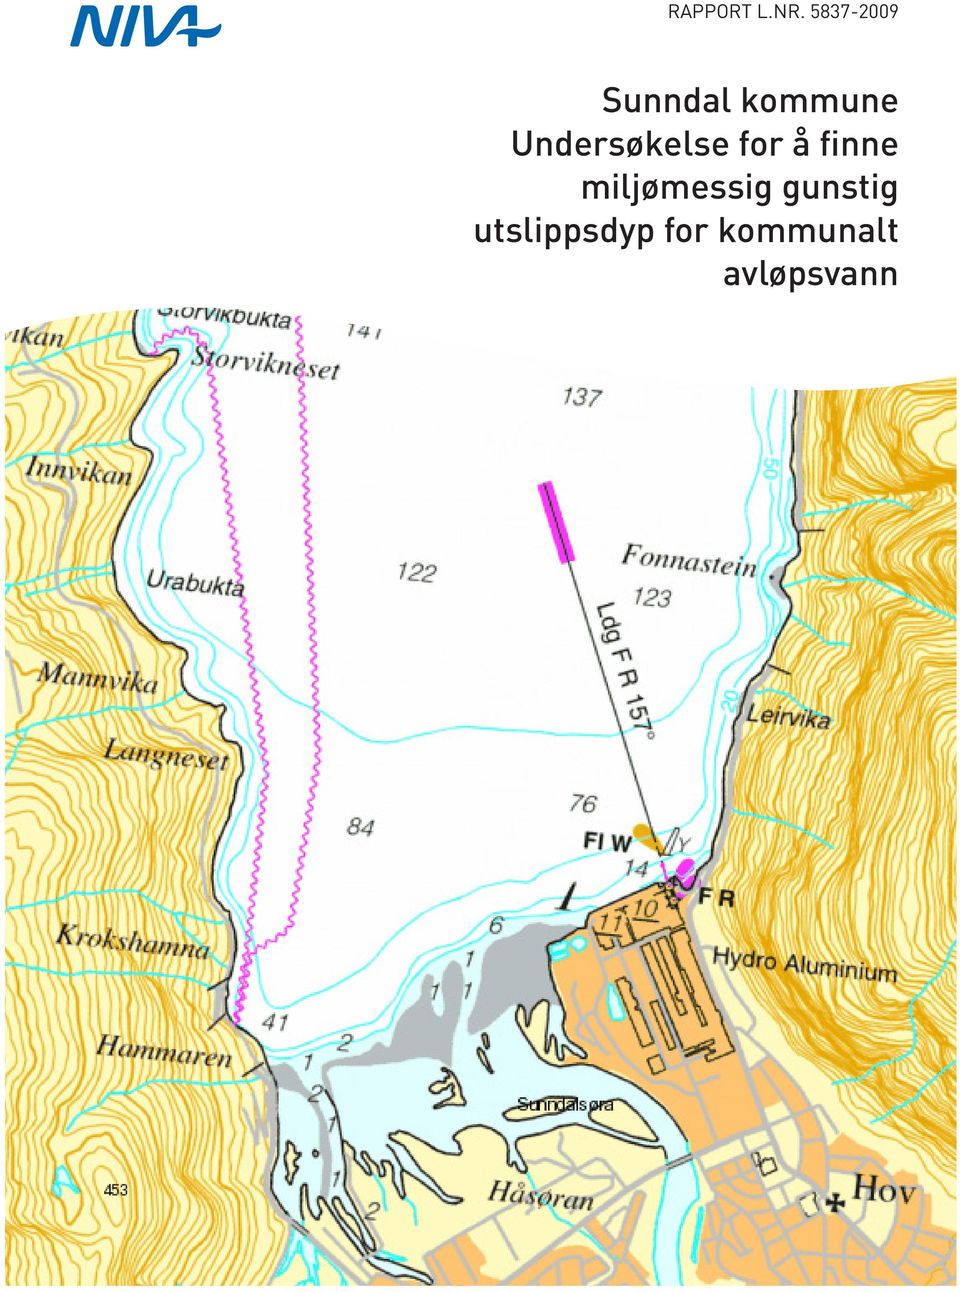 5837-2009 avløpsvann Sunndal kommune